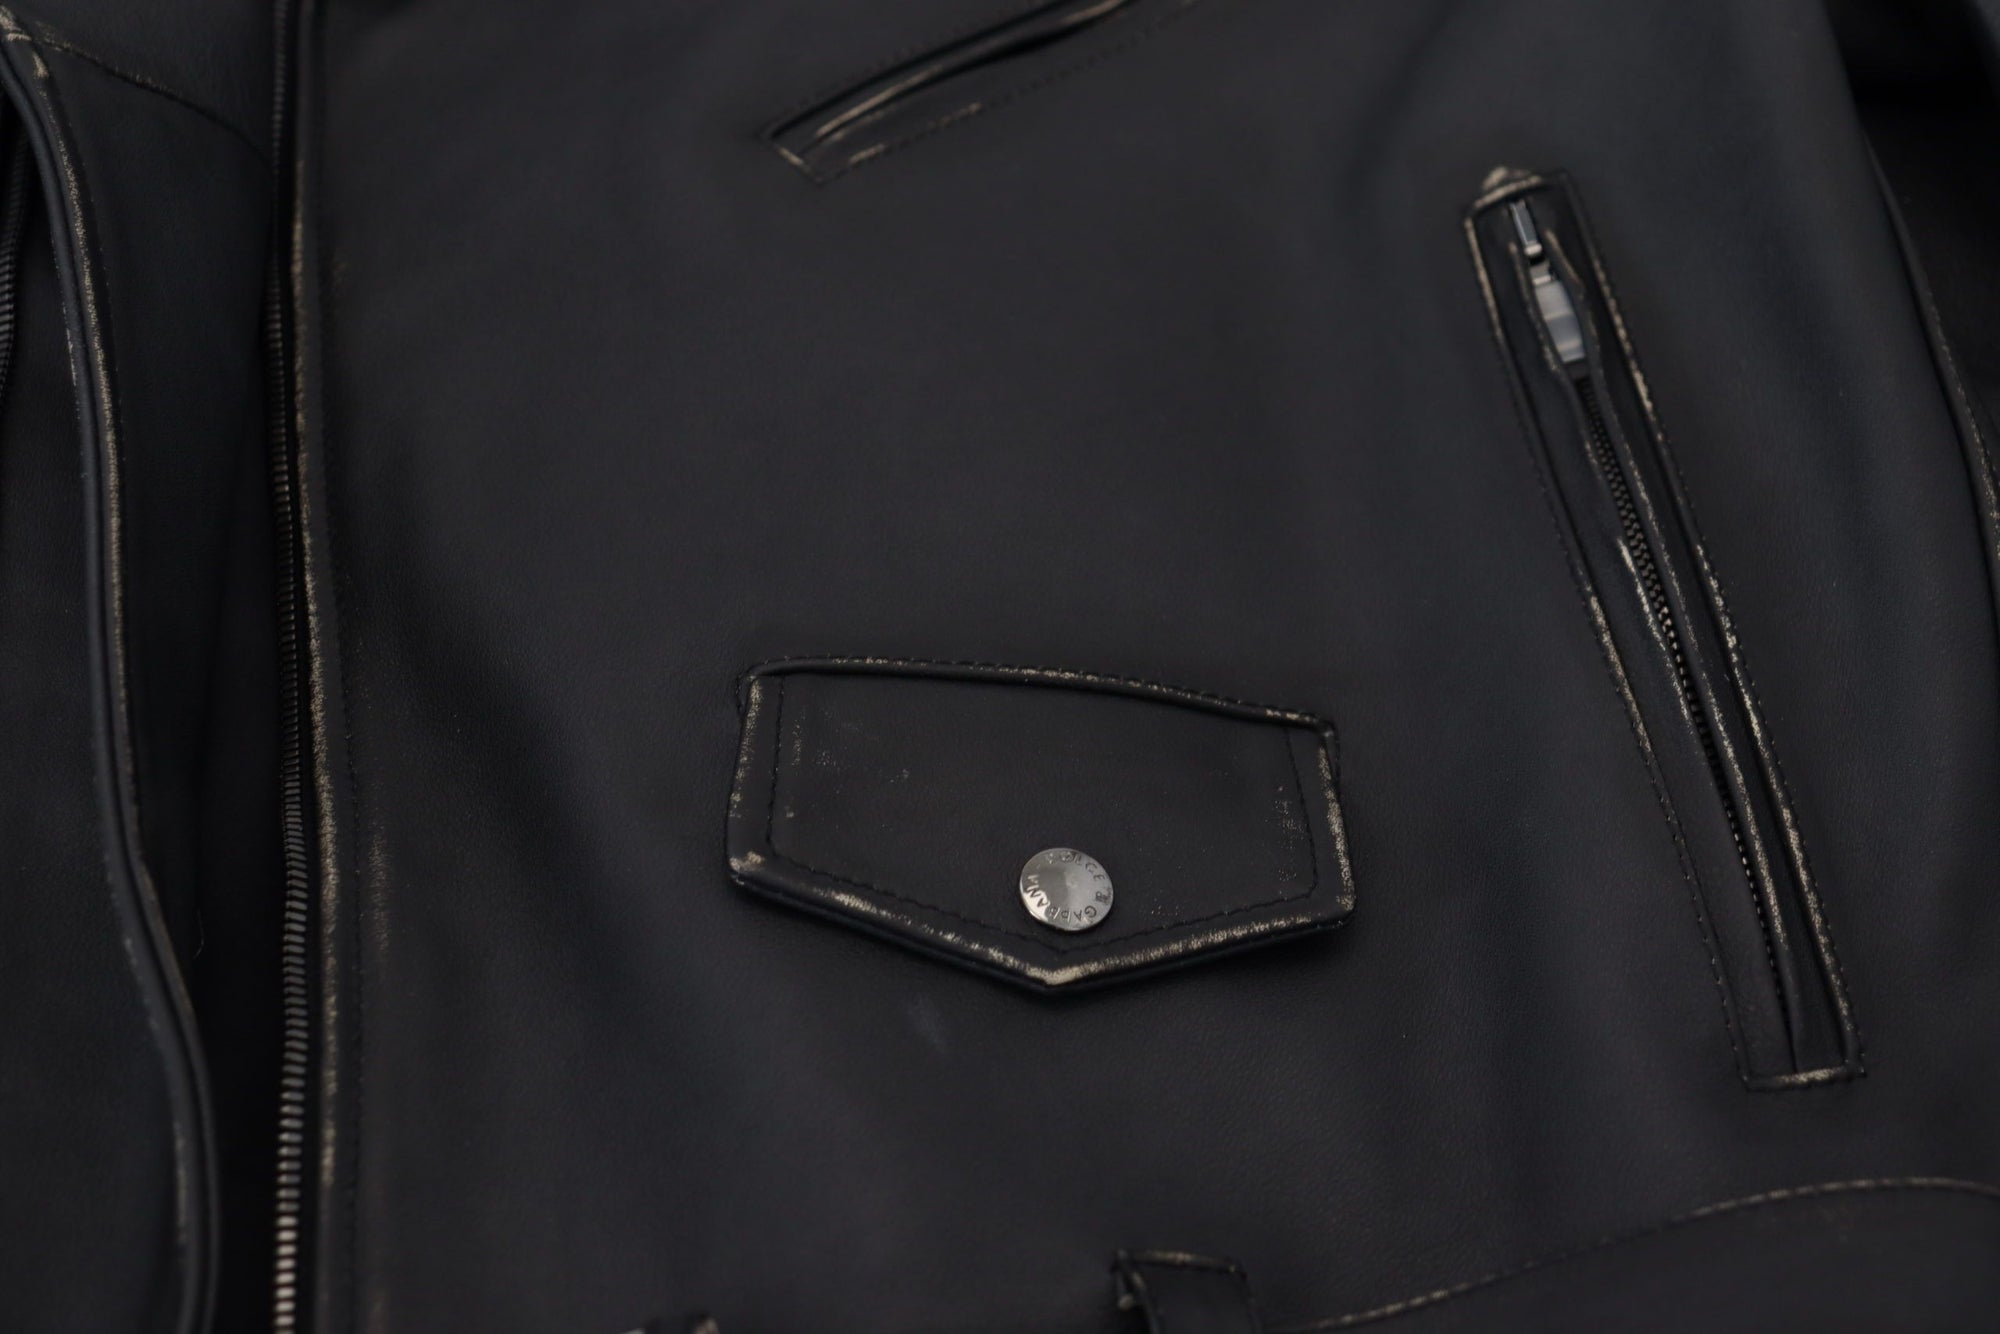 Elegant Black Leather Biker Jacket